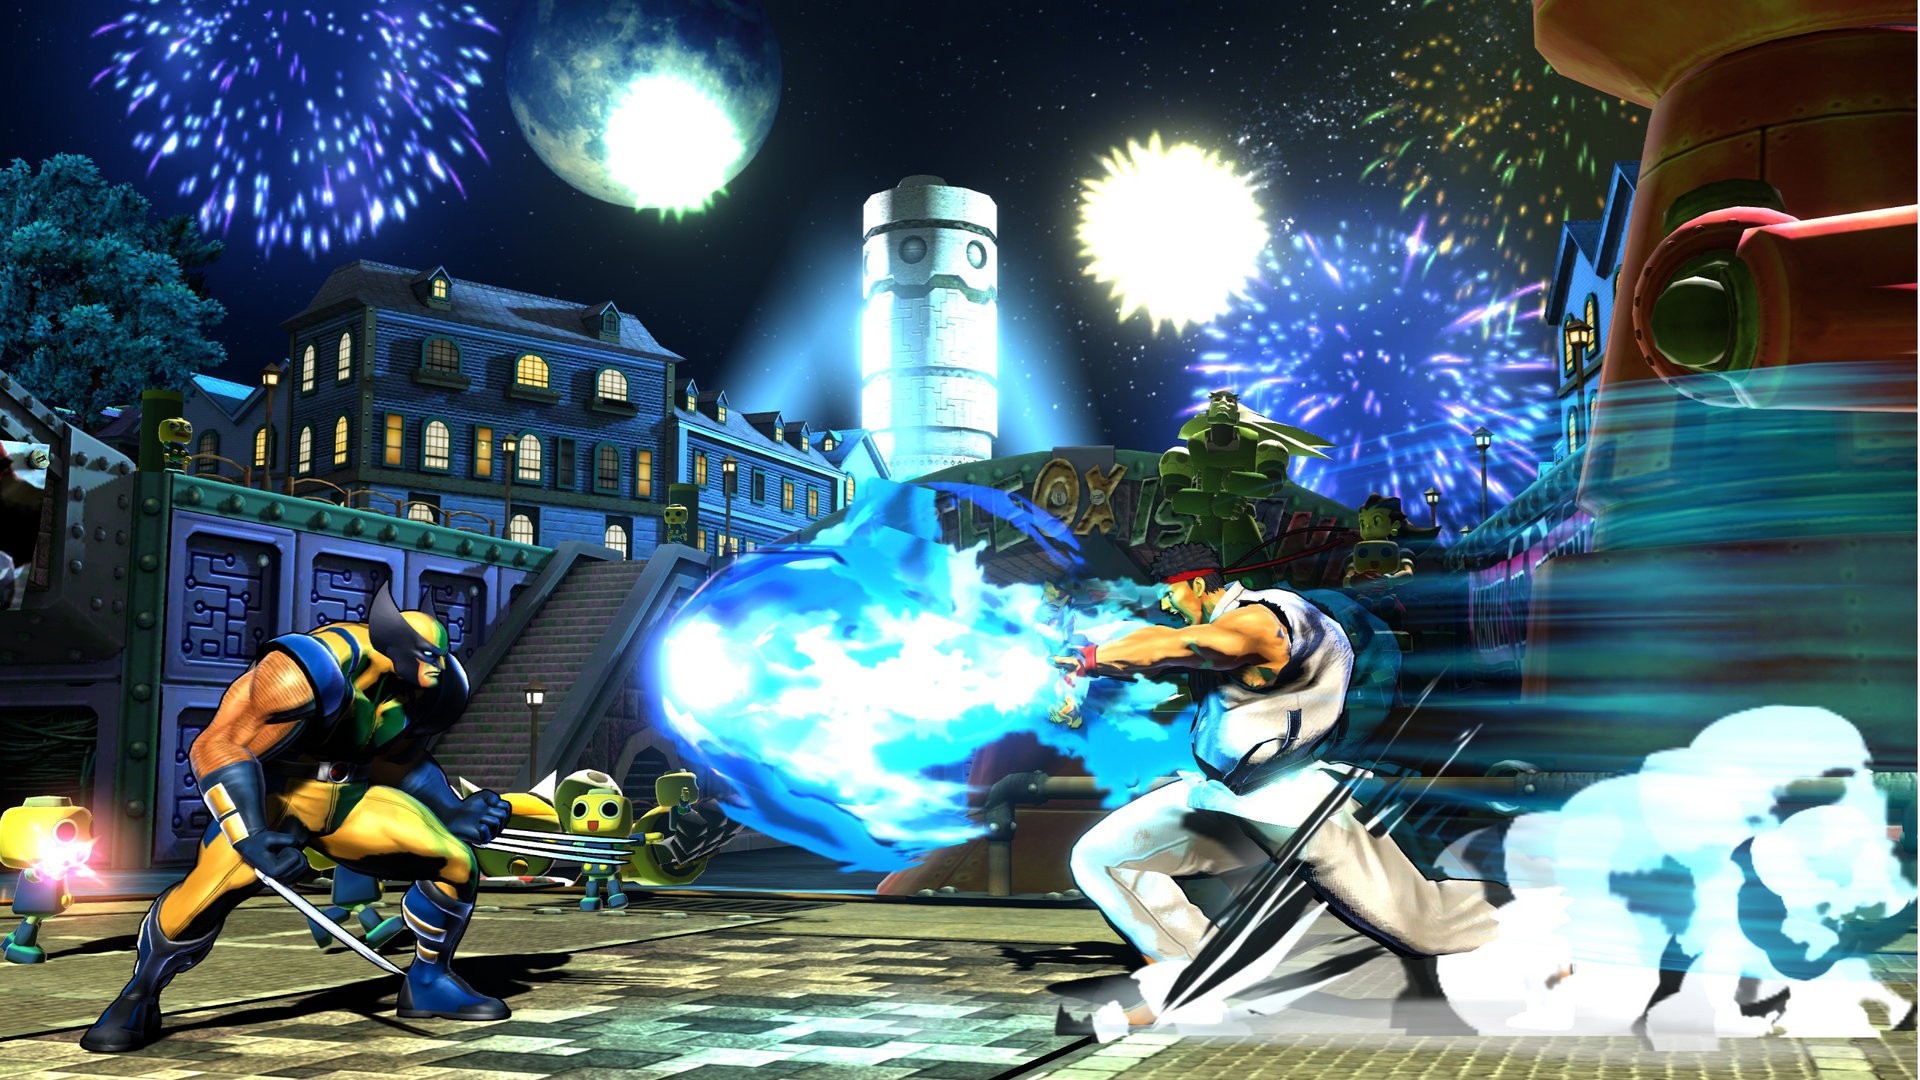 Mortal Kombat vs Street Fighter - кто сильнее? Самые лучшие кроссоверные файтинги.